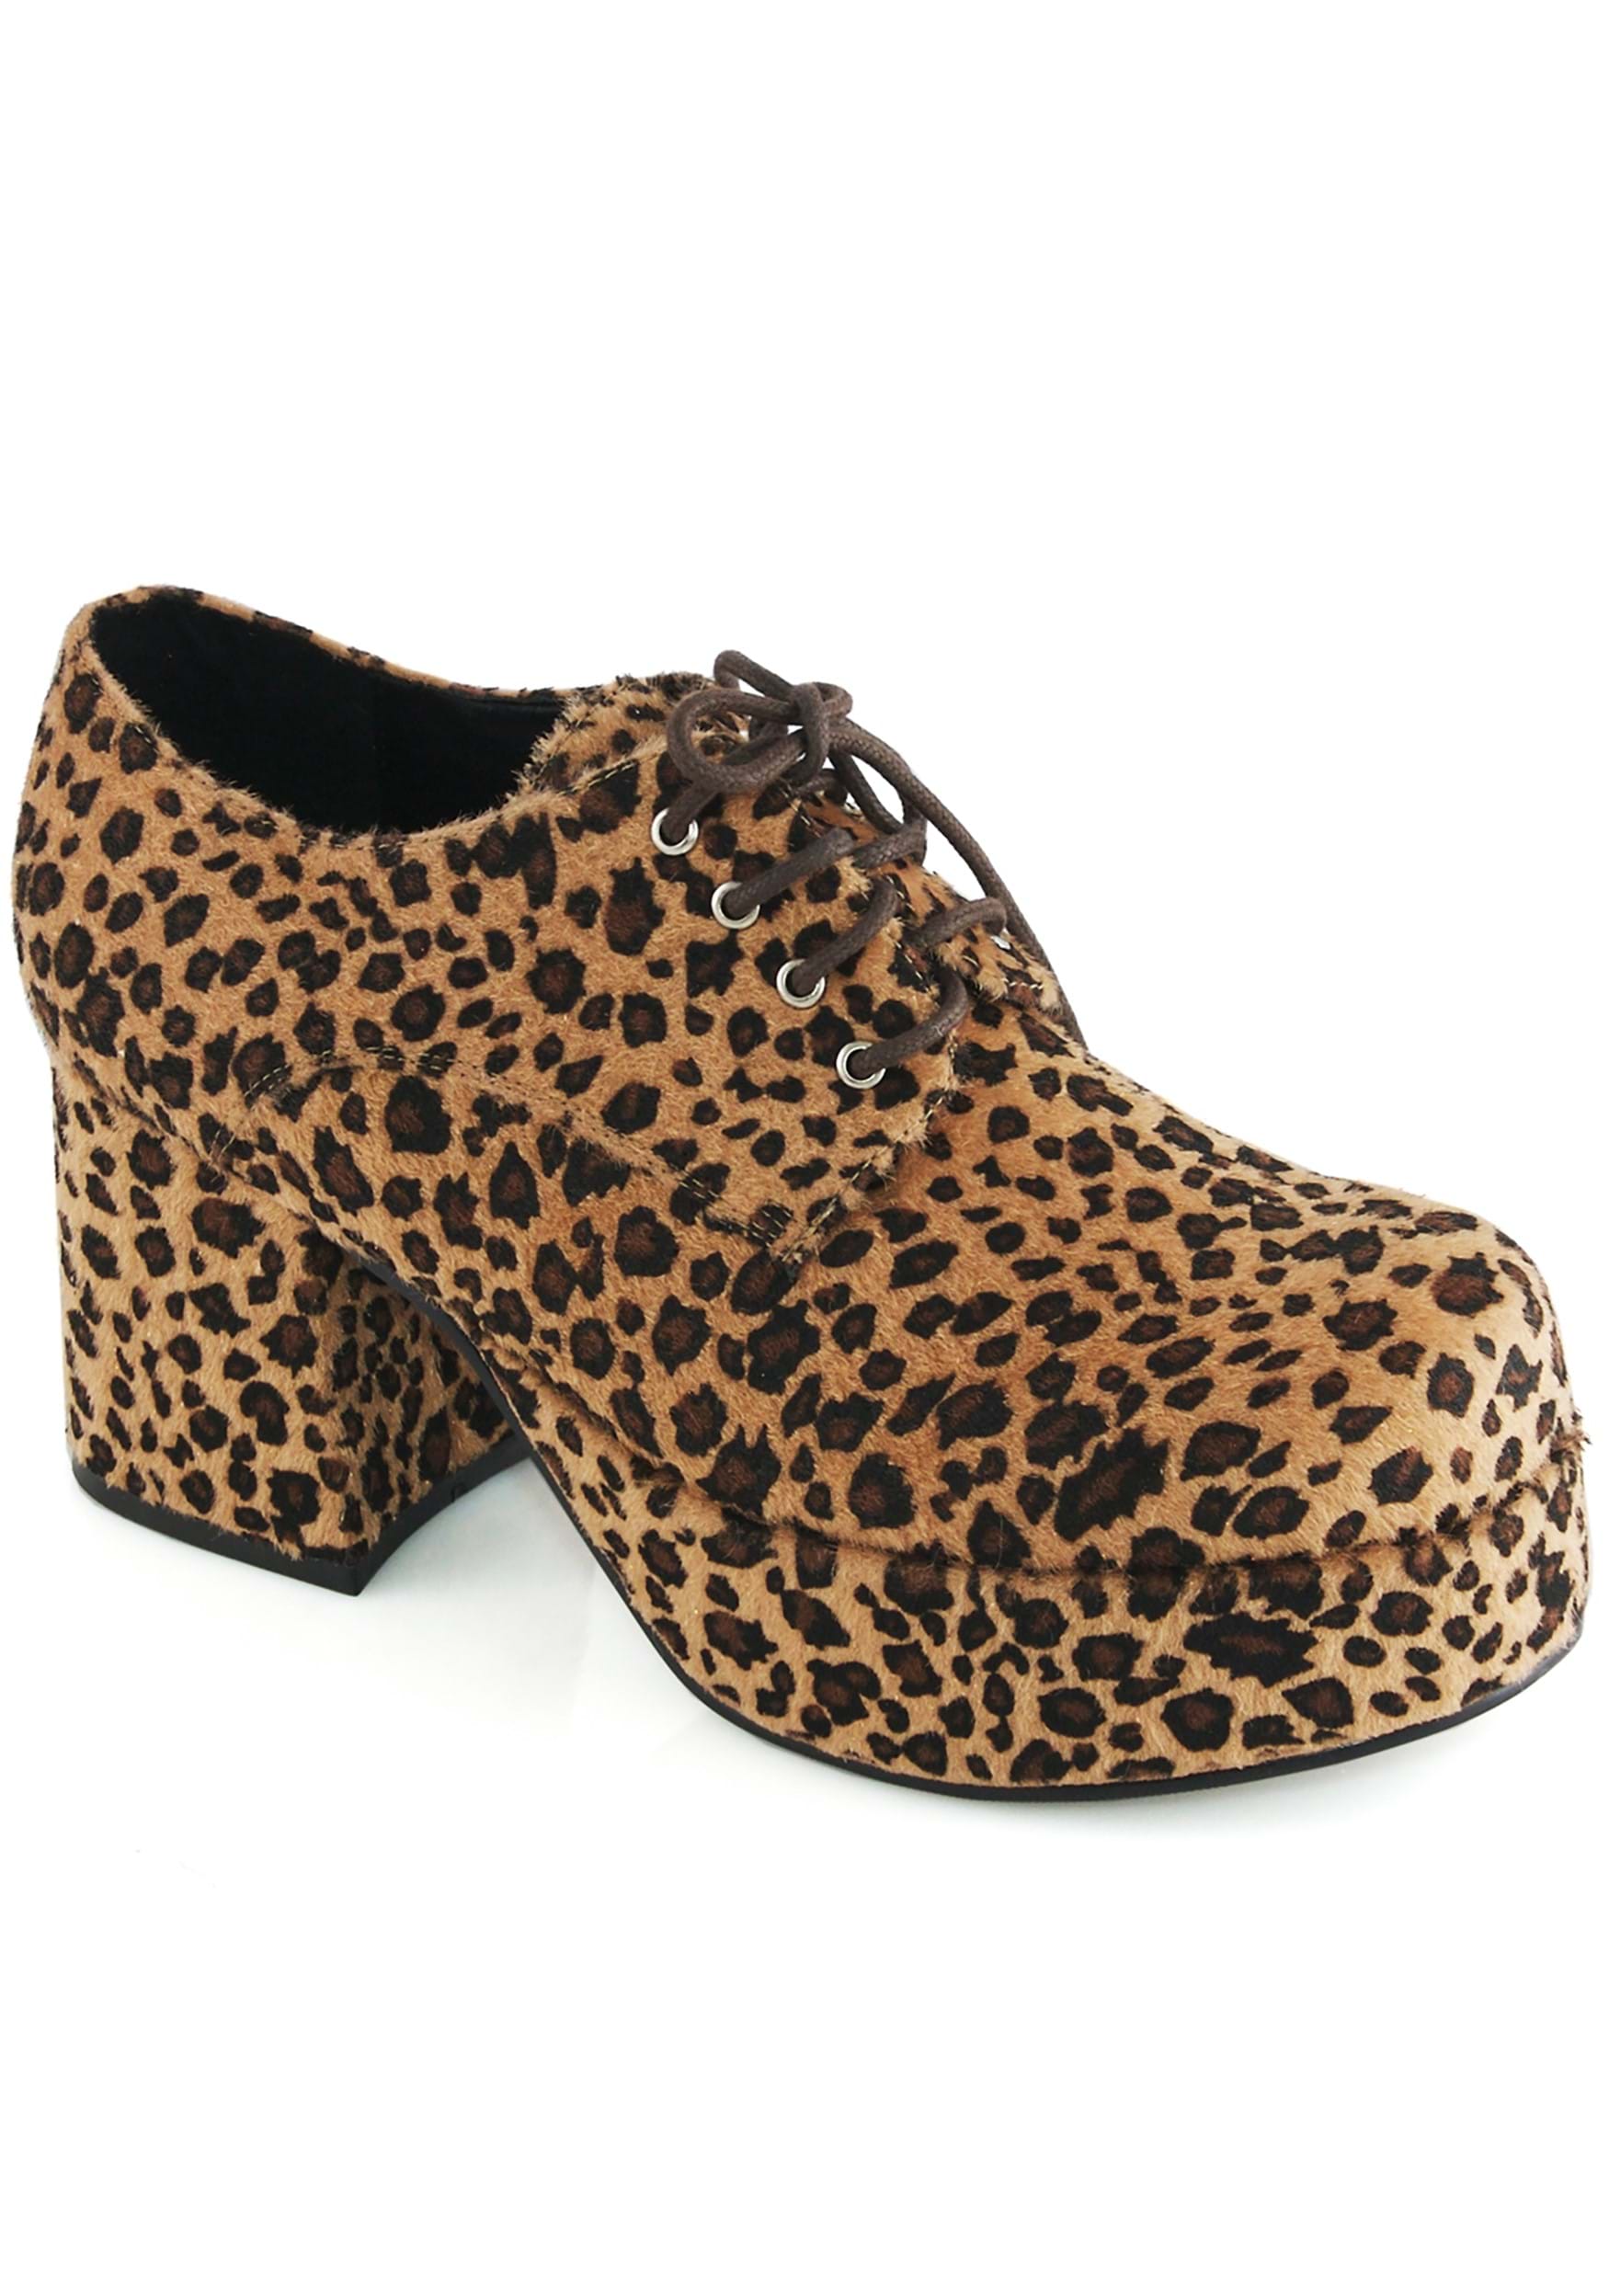 Image of Leopard Platform Men's Pimp Shoes ID EE312PIMPLEO-M